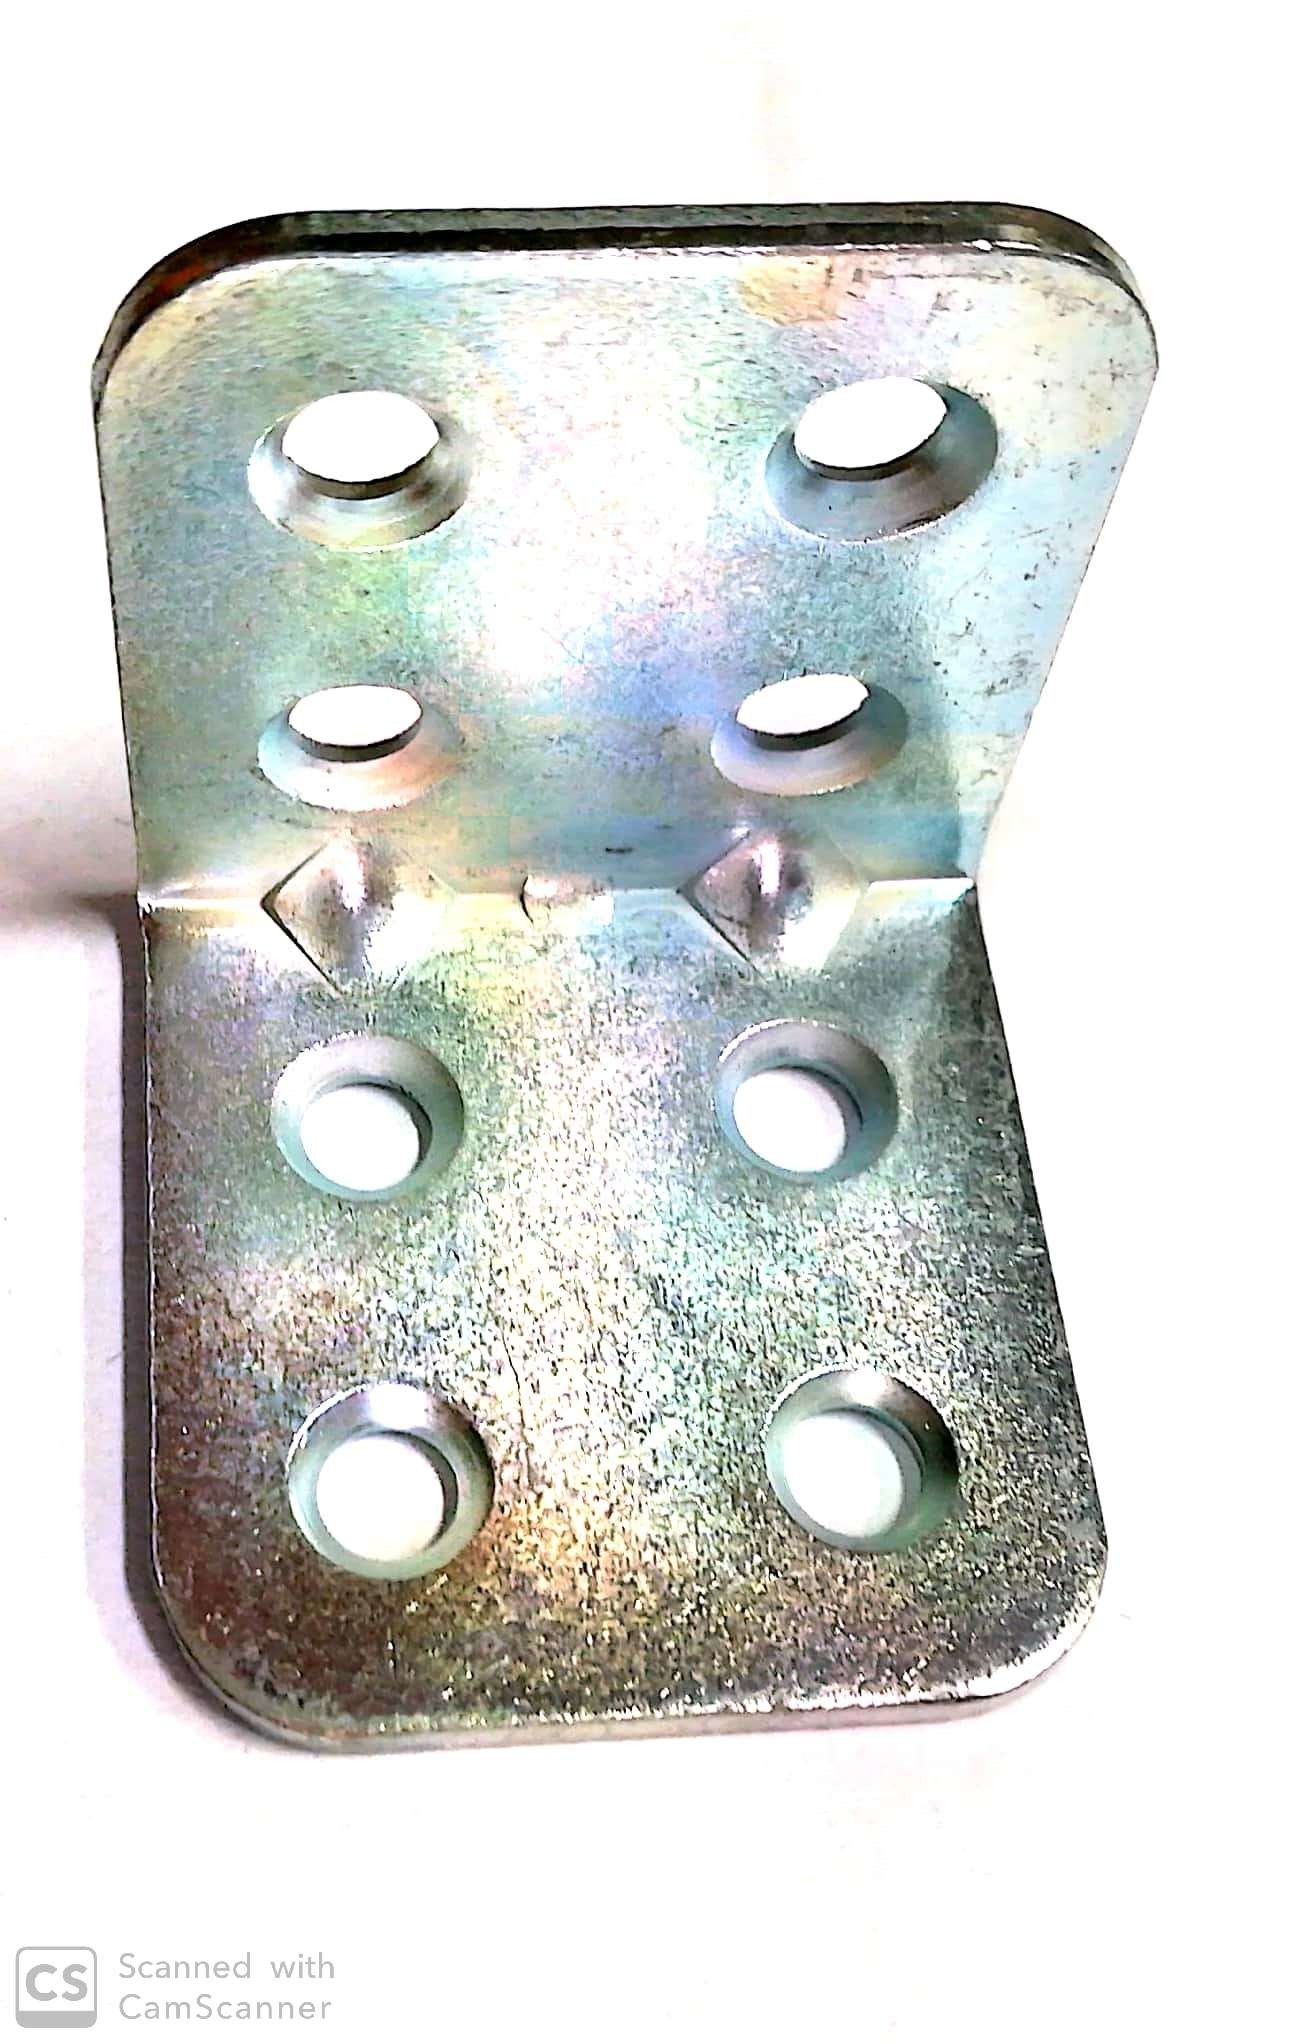 Piastrina pesante ad angolo mm 30 x 30 in ferro zincata